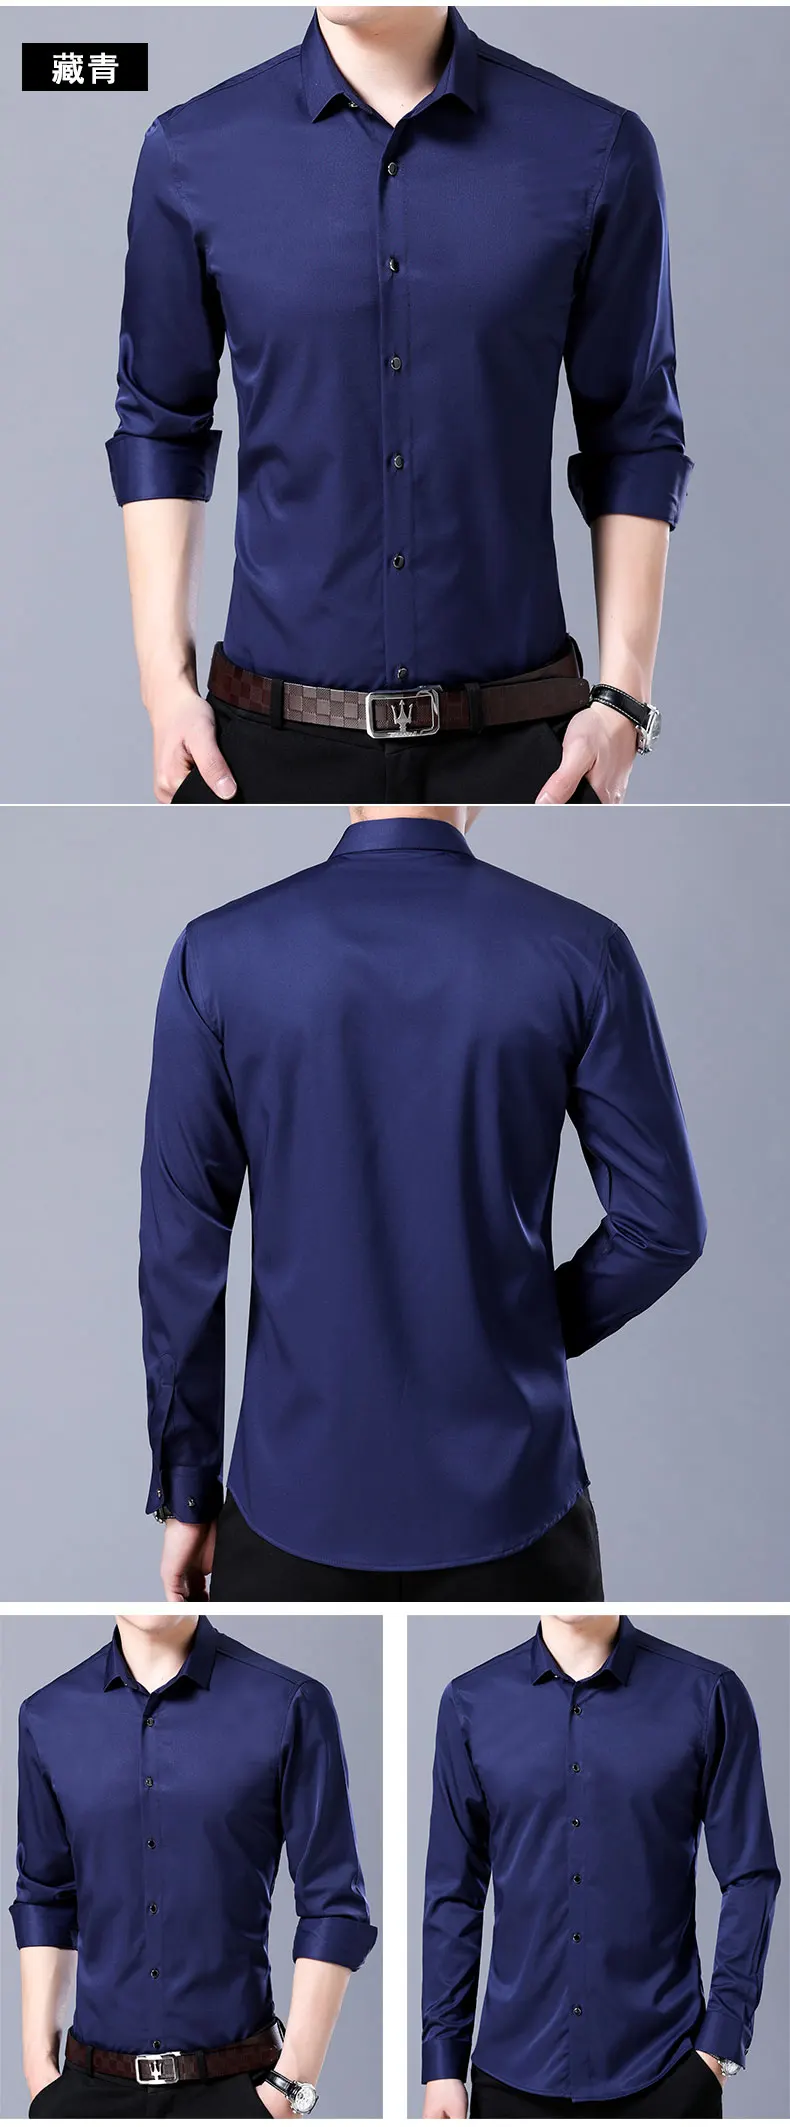 9 цветов, высокое качество, нарядные рубашки, новые деловые повседневные мужские рубашки с длинным рукавом, модные мужские брендовые одноцветные тонкие рубашки